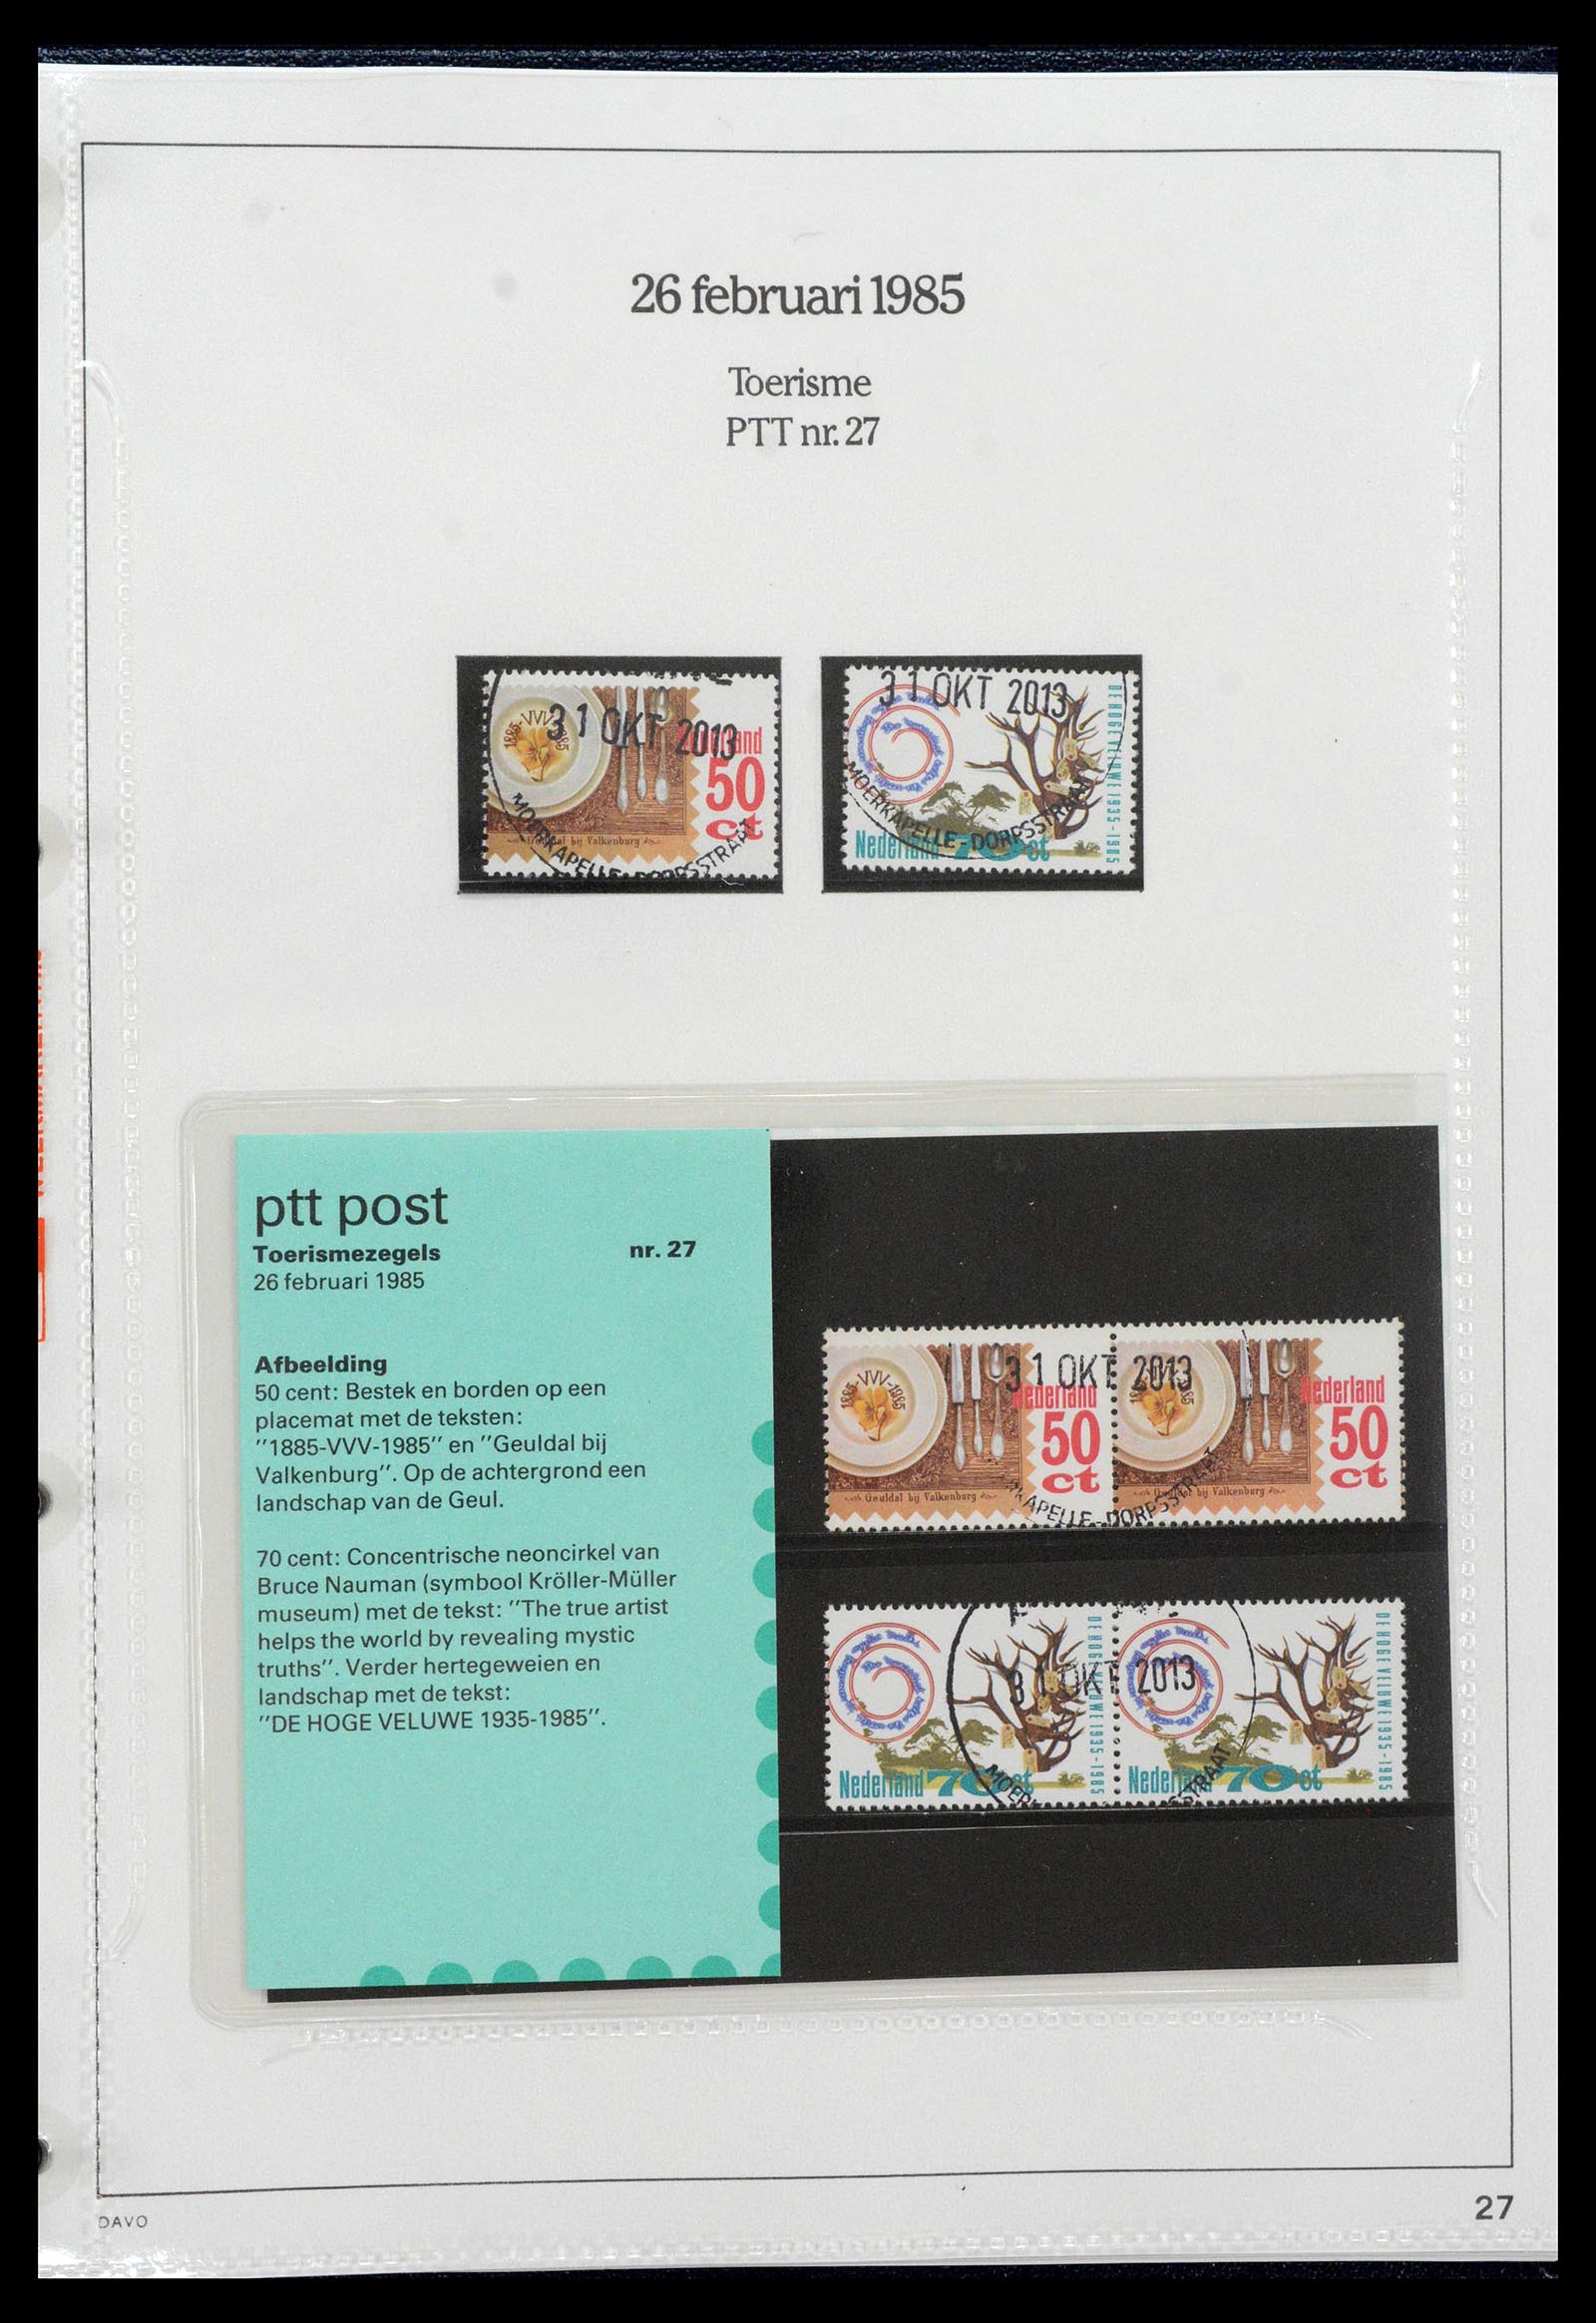 39121 0027 - Stamp collection 39121 Netherlands presentationpacks 1982-2001.